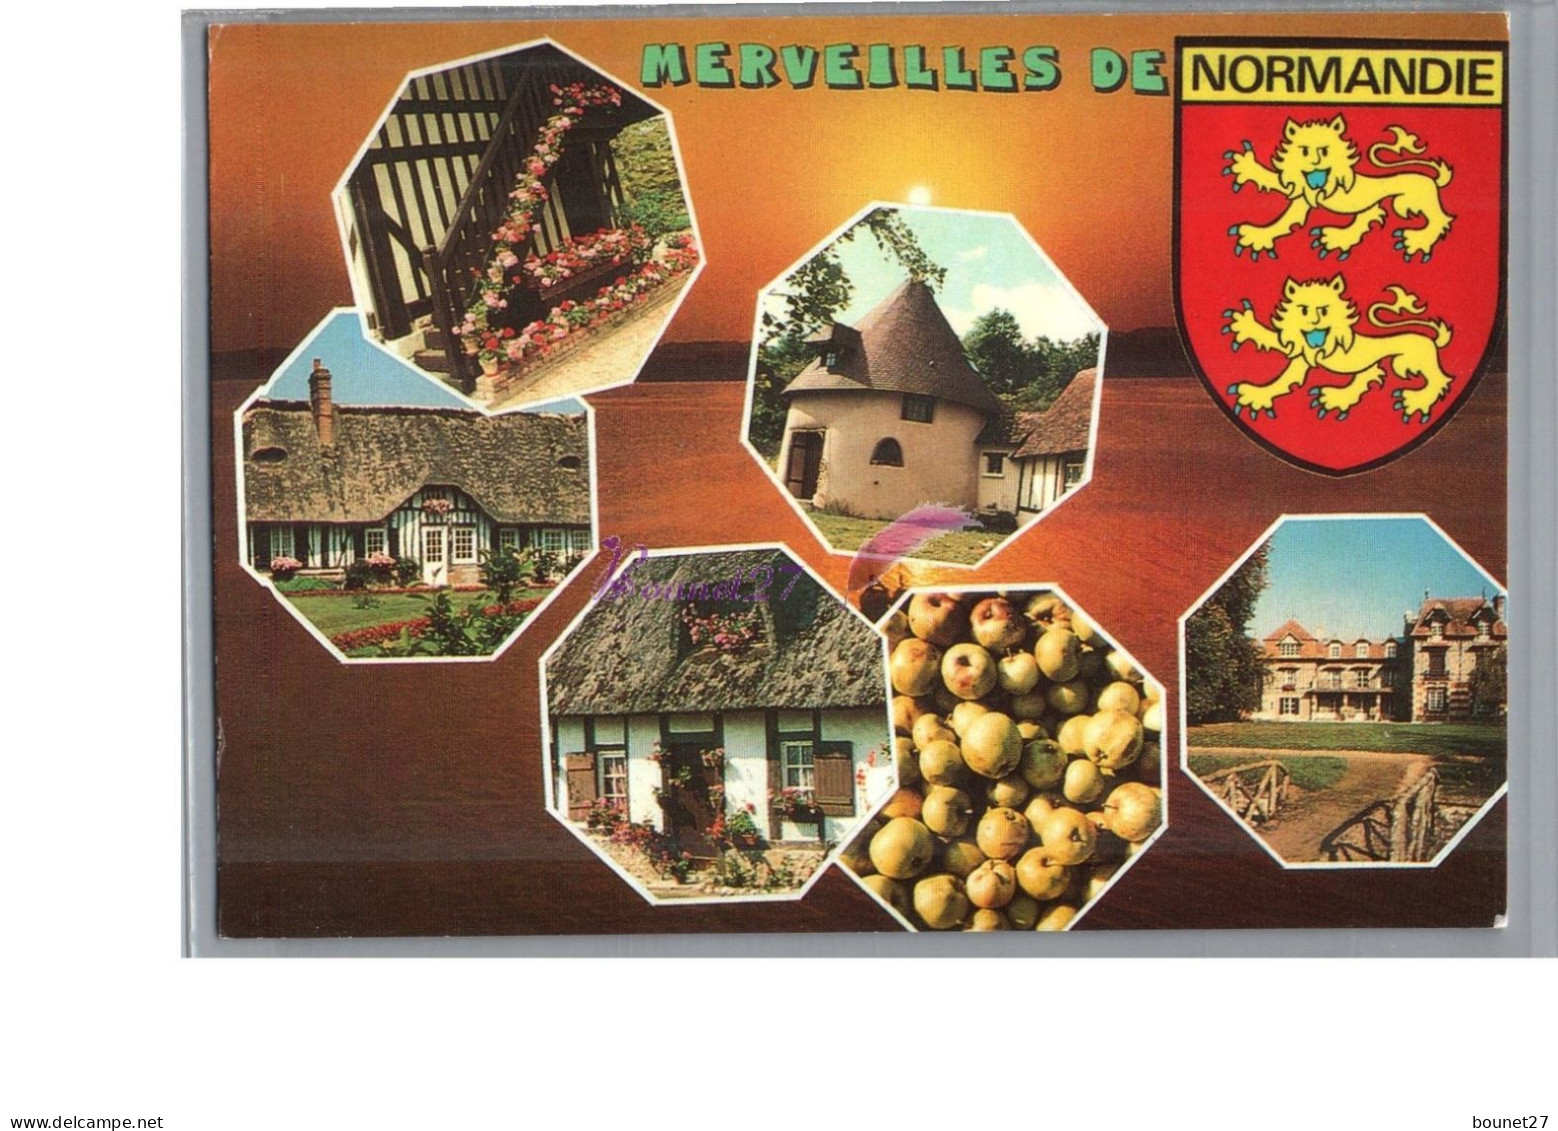 MERVEILLES DE NORMANDIE - Maison En Chaume Tourelle Pomme Pommier Château Colombage Emblème Léopard - Basse-Normandie